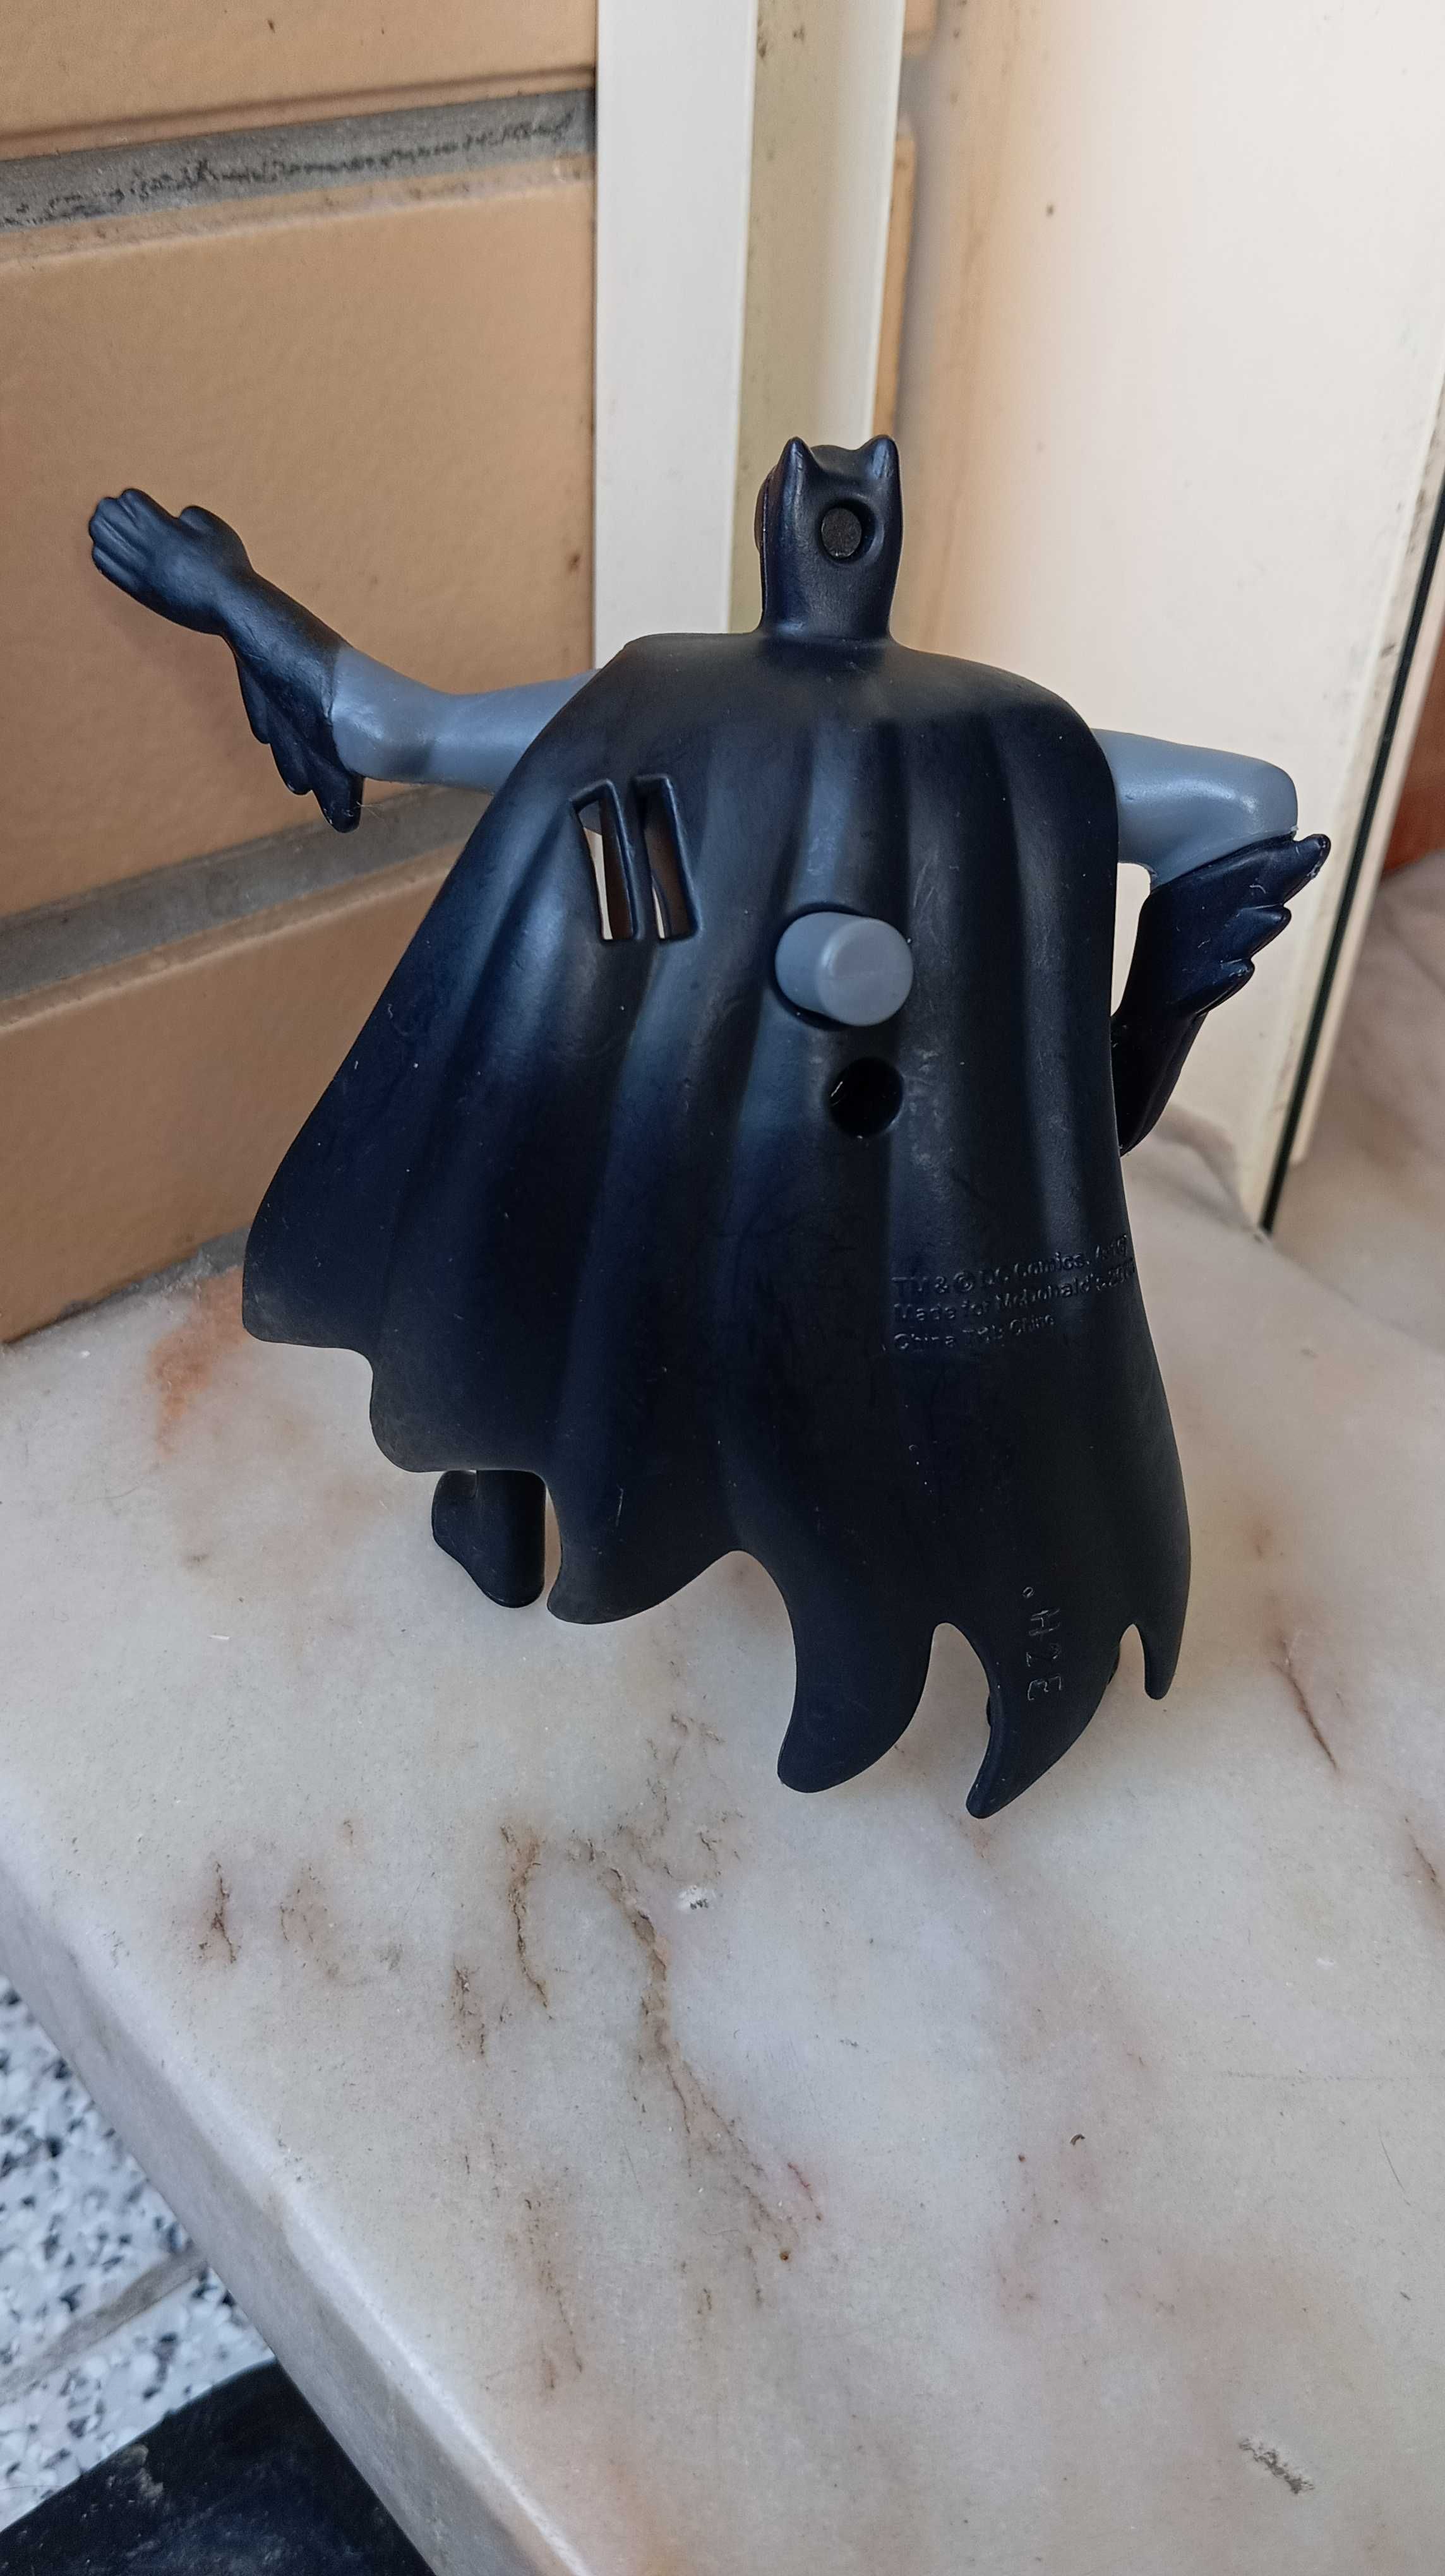 Figuras da coleção Batman